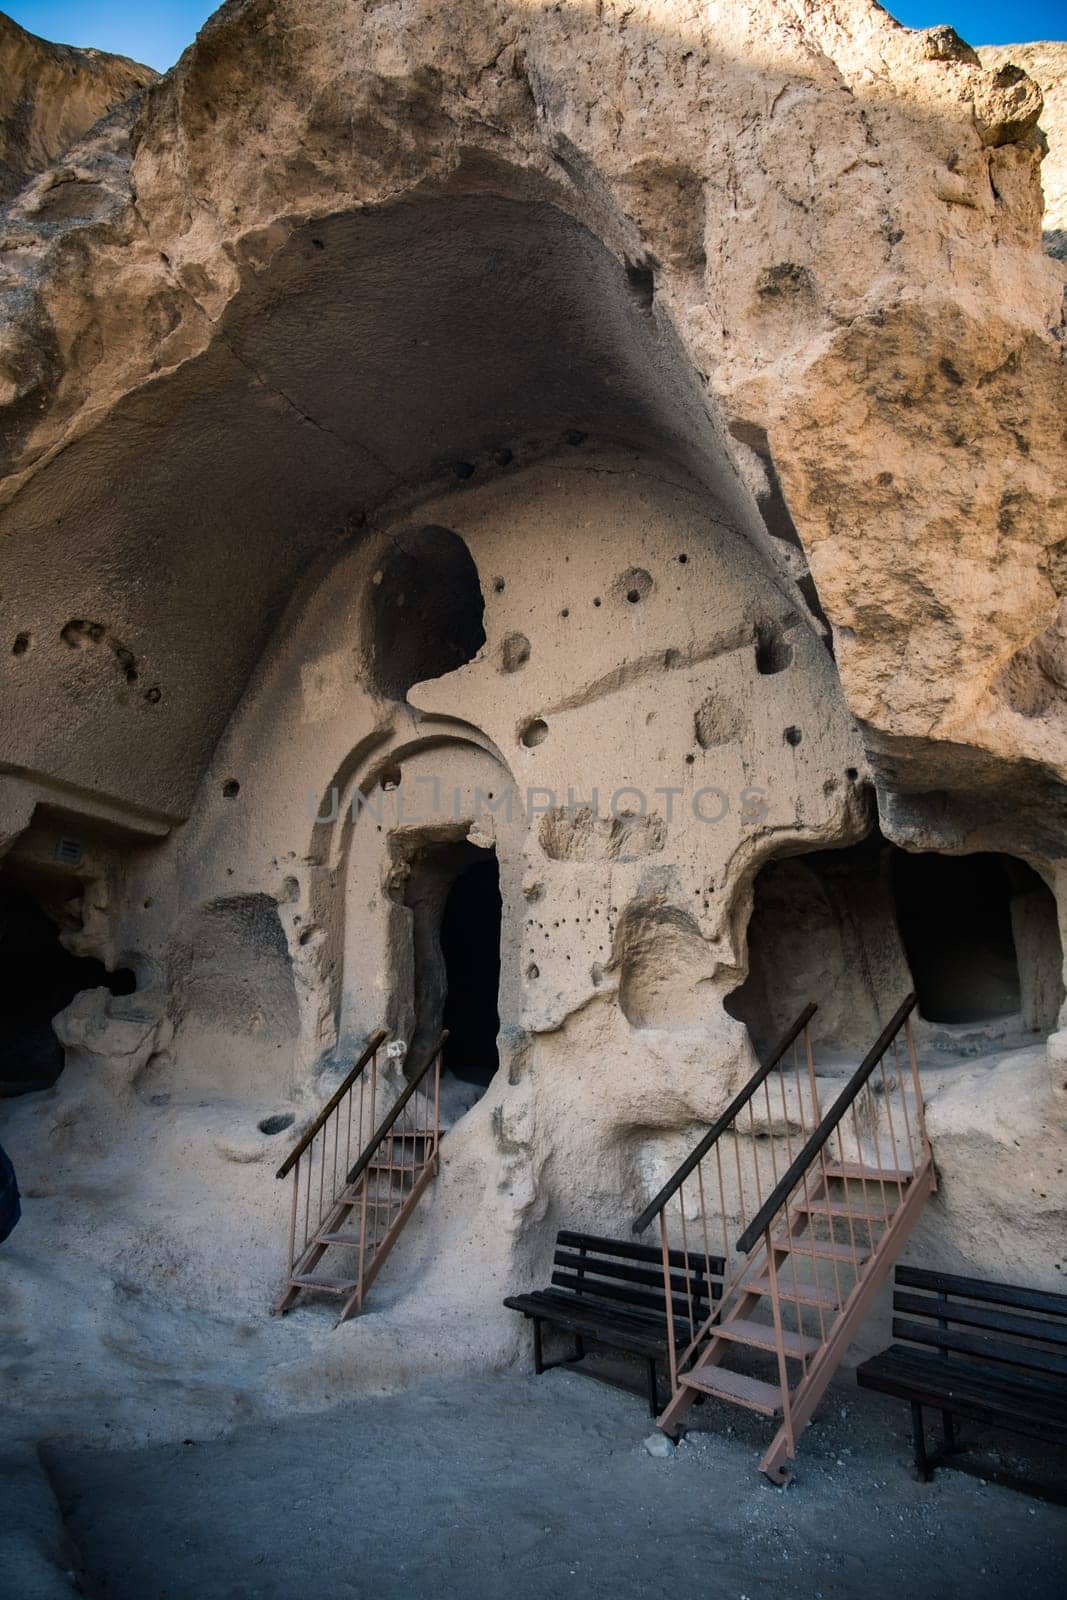 Astonishing Selime Monastery in Cappadocia, Turkey by GekaSkr